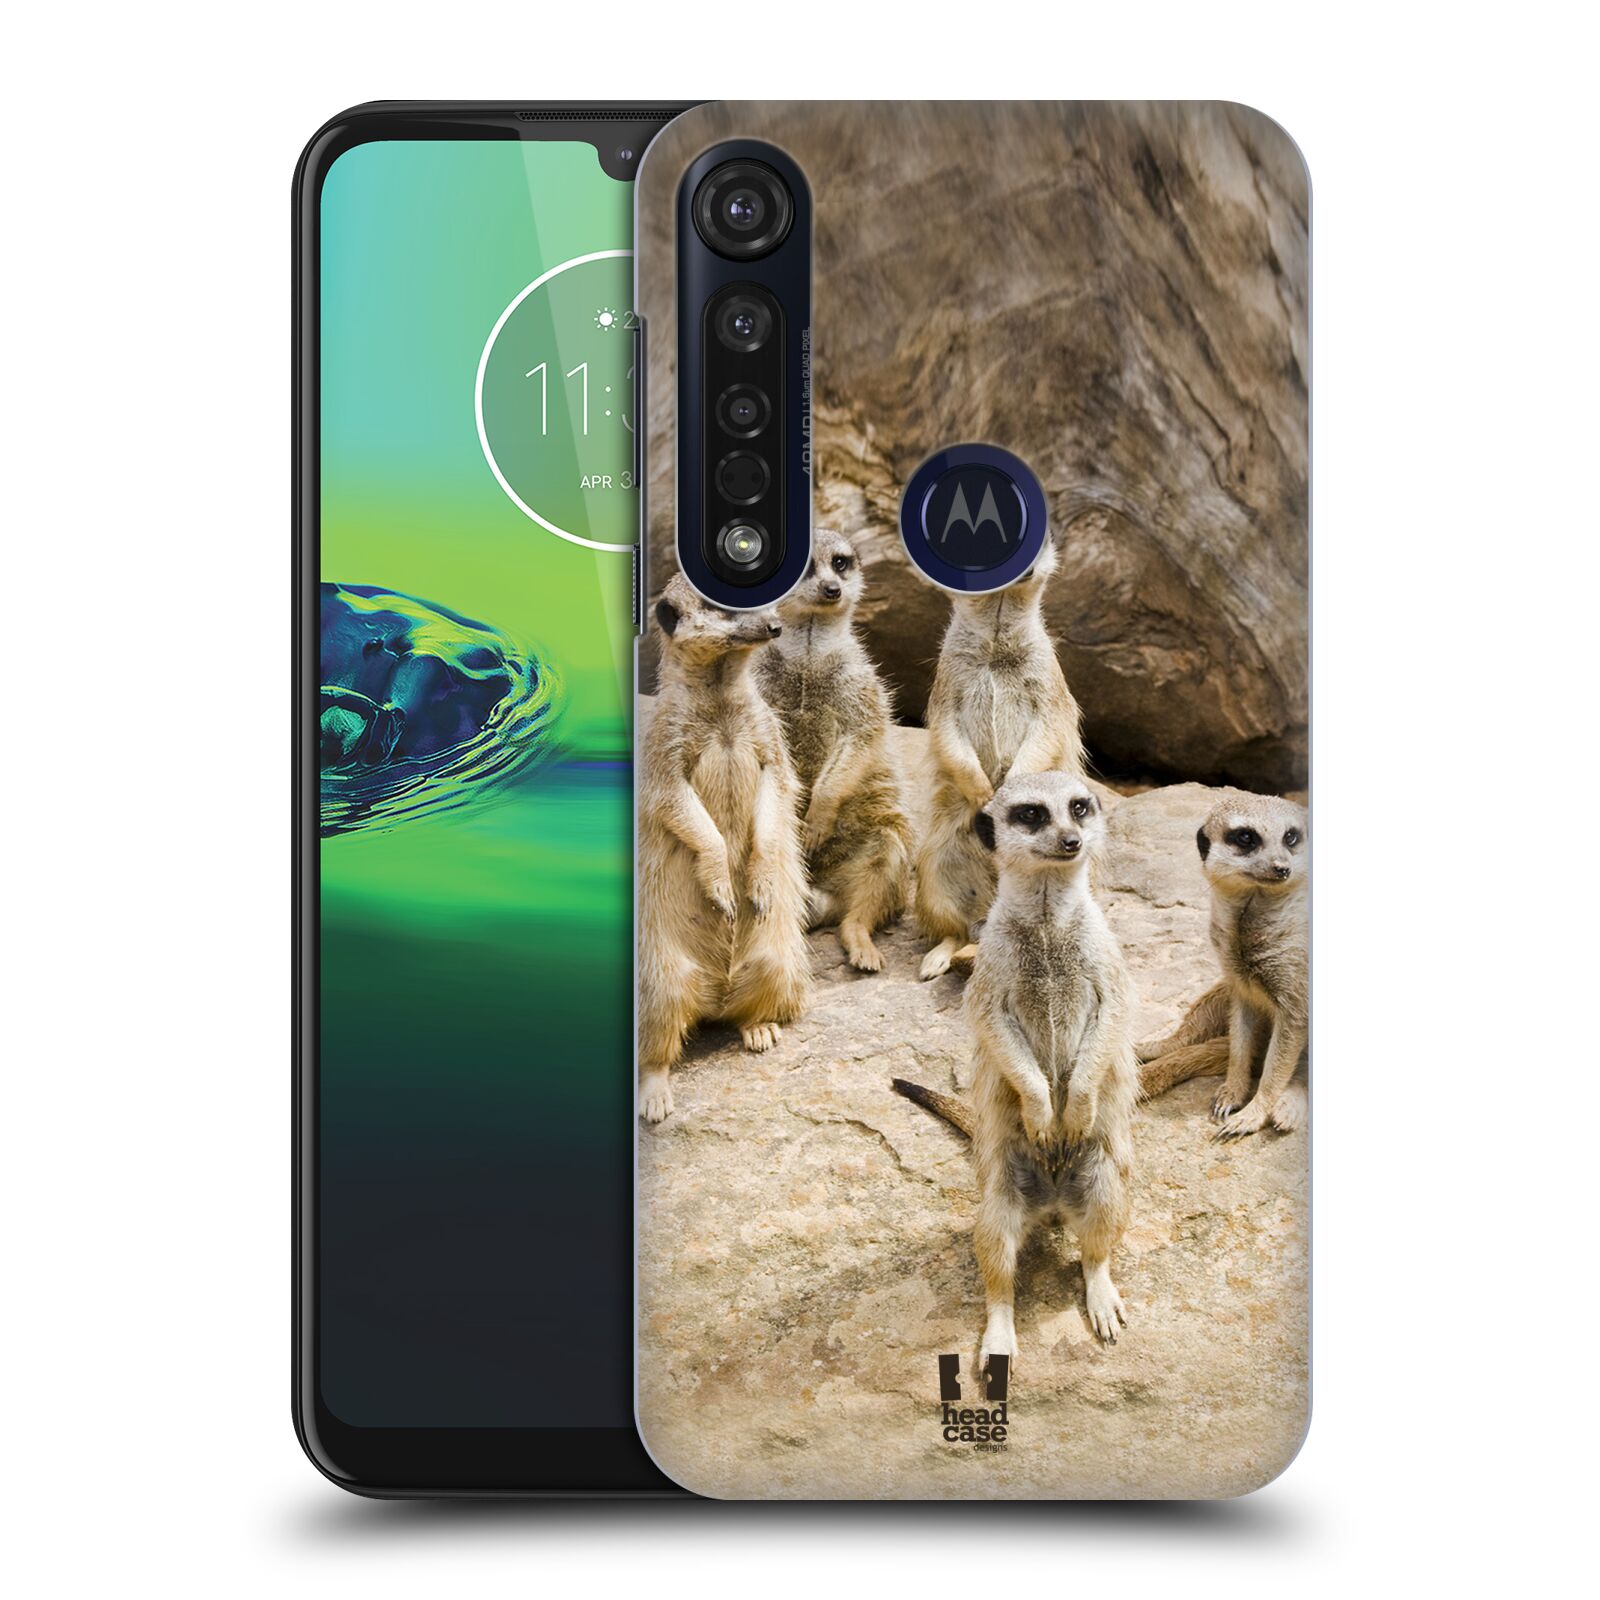 Pouzdro na mobil Motorola Moto G8 PLUS - HEAD CASE - vzor Divočina, Divoký život a zvířata foto SURIKATA